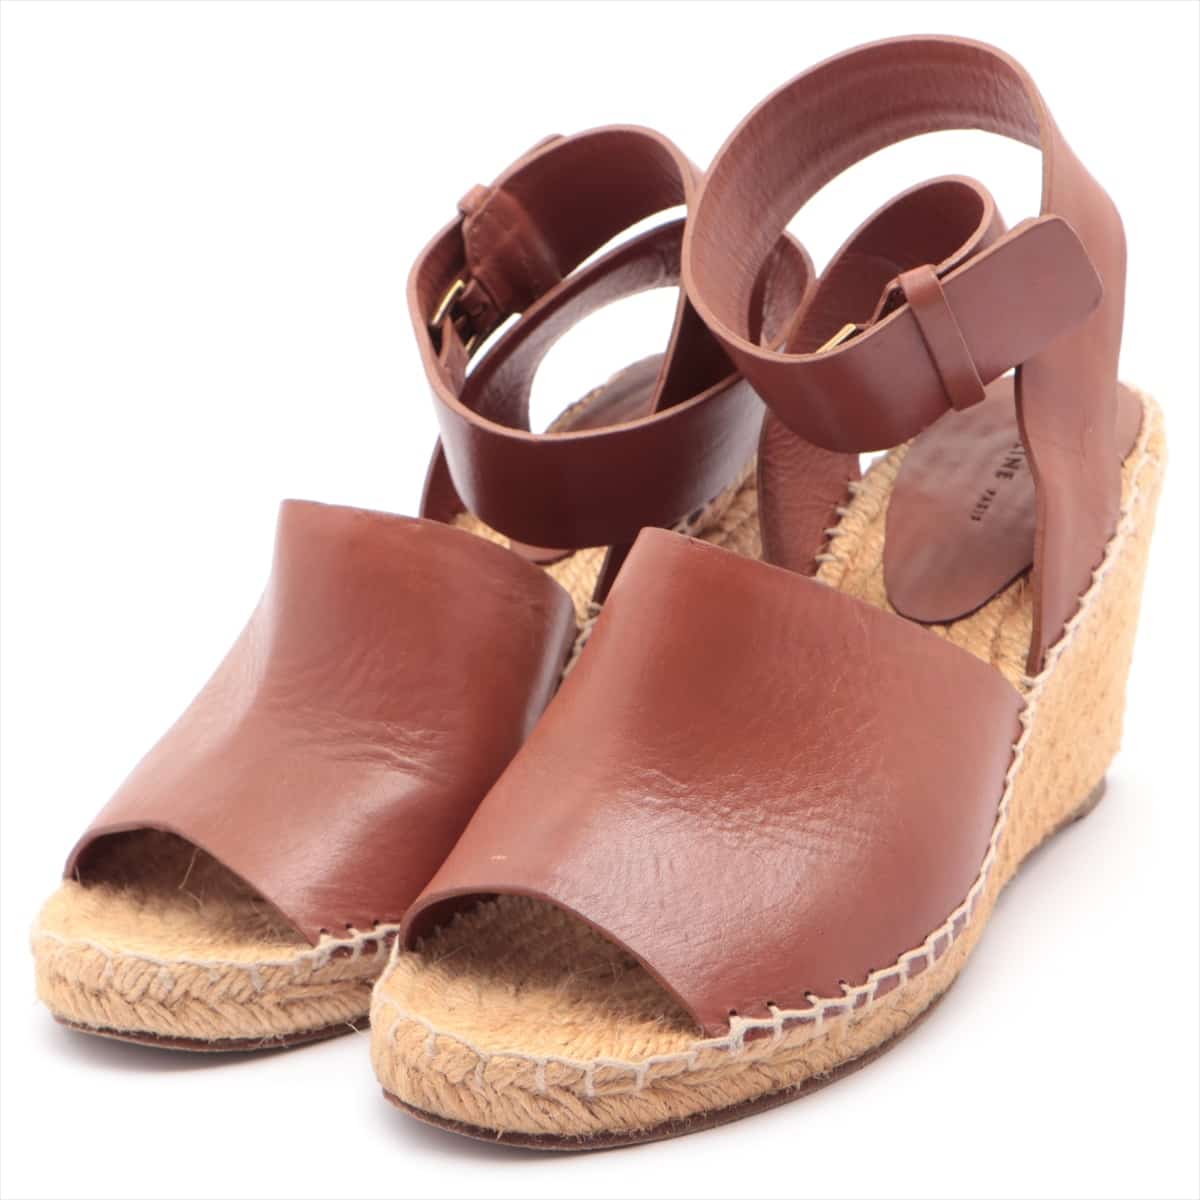 CELINE Leather Wedge Sole Sandals 37 Ladies' Brown